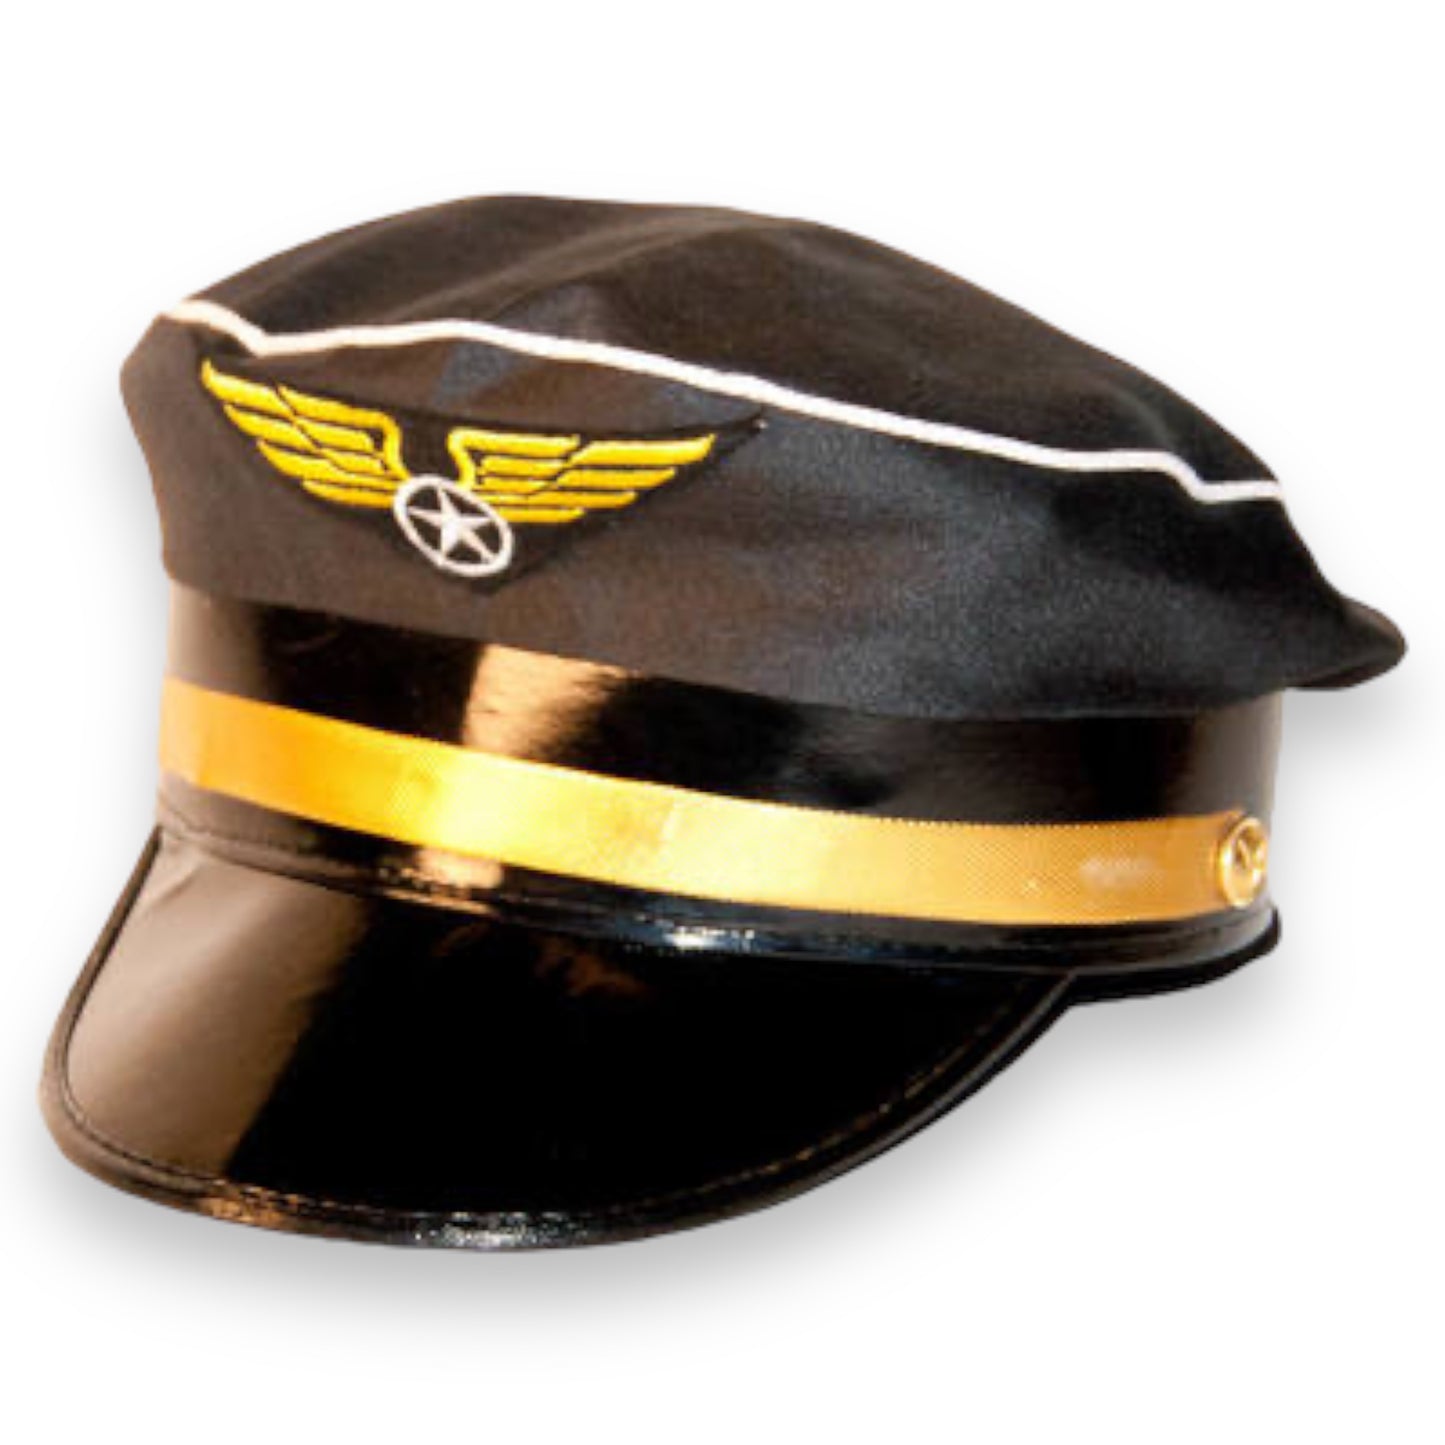 Black Pilot Cap - The Sky Is Your Domain